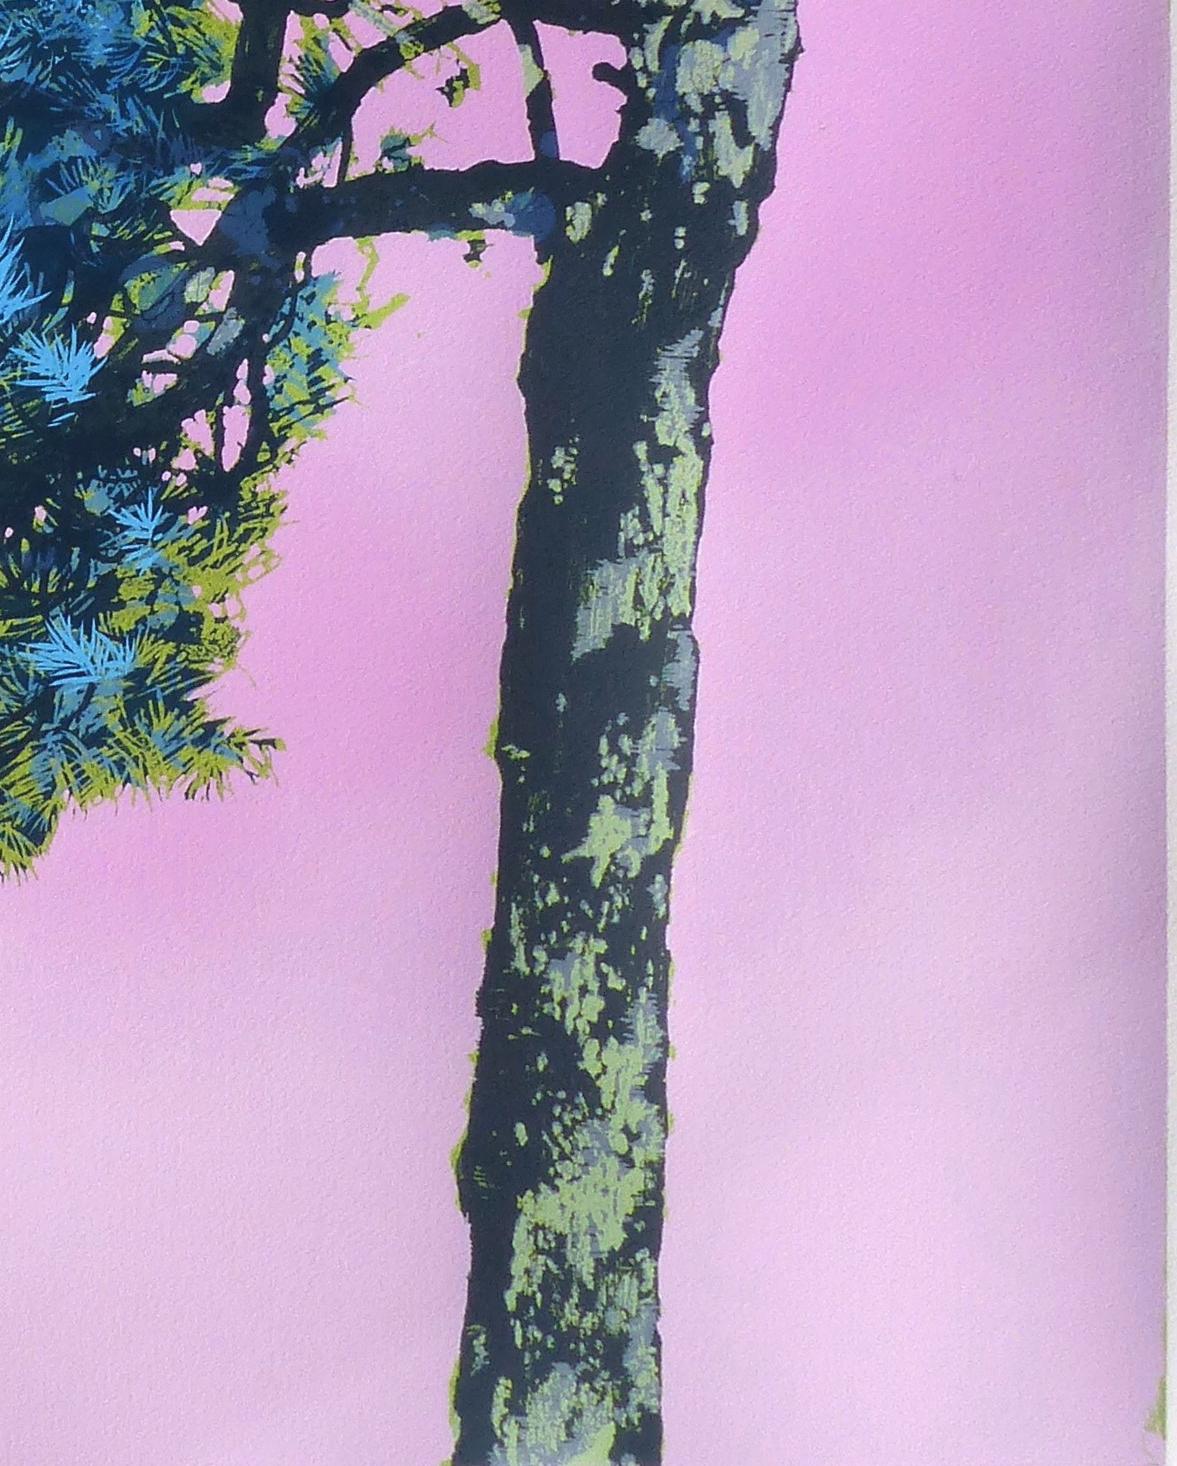 “Pine” Limited Edition Color Print of Nature, A Fairytale Journey - Blue Landscape Print by Henrik Simonsen 